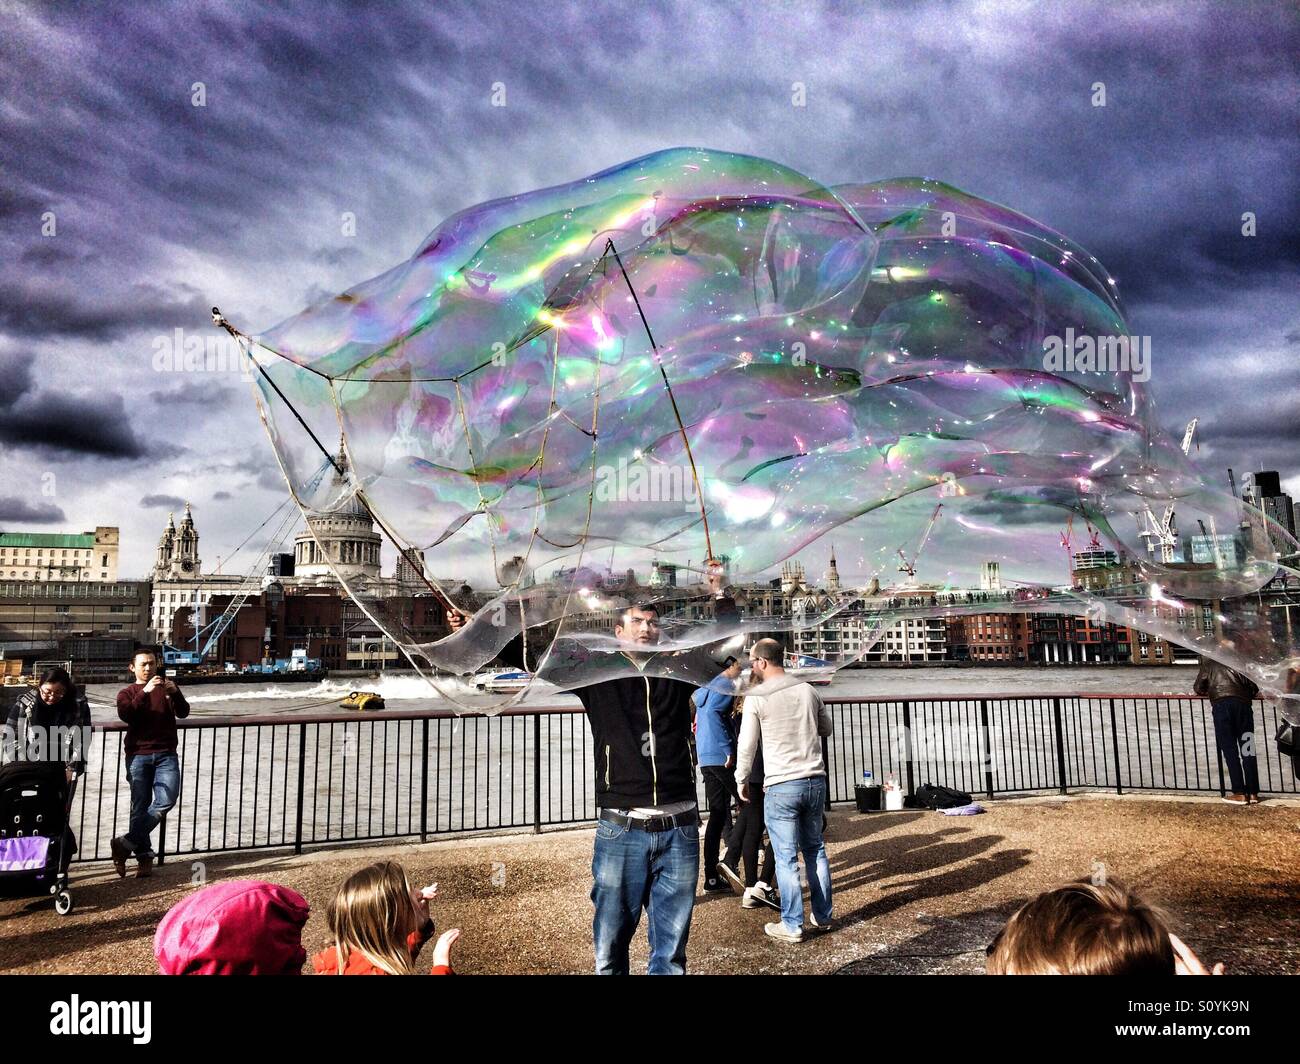 Musicien ambulant divertit les foules sur la rive sud de Londres en soufflant d'énormes bulles de savon. La Cathédrale St Paul peut être vu dans l'arrière-plan Banque D'Images